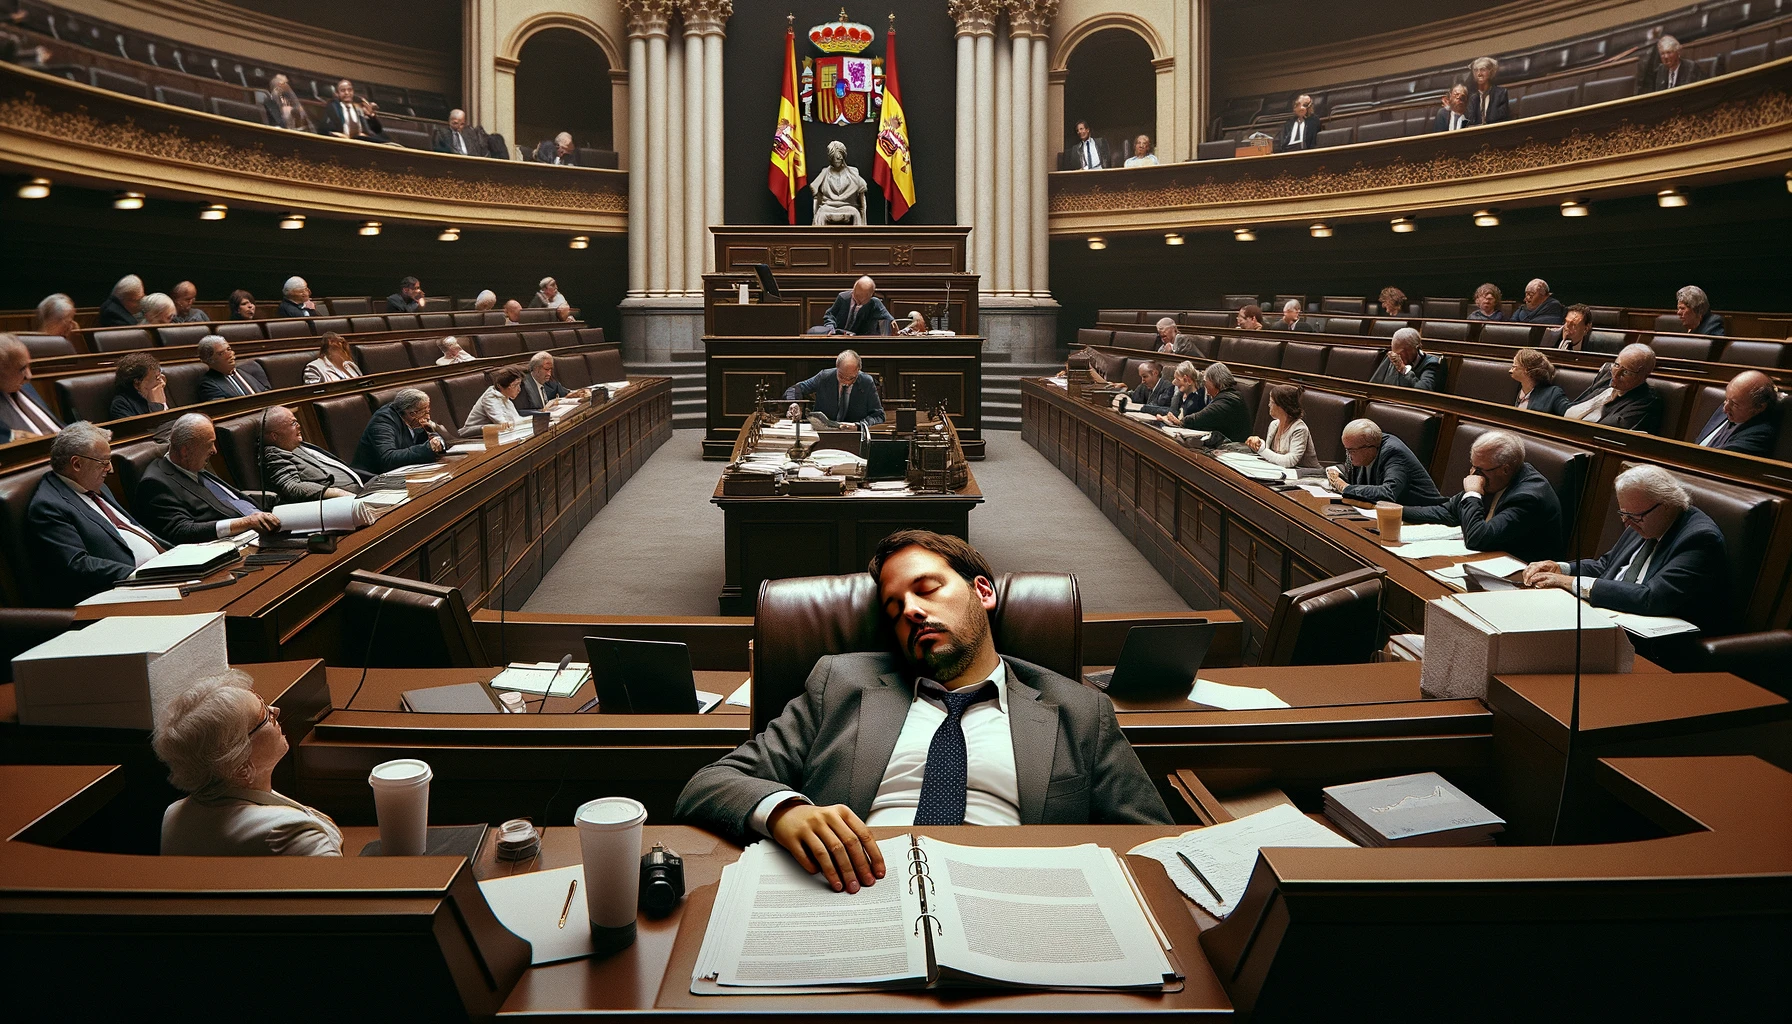 spanish-politician-has-siesta-on-the-job-spain-csdn